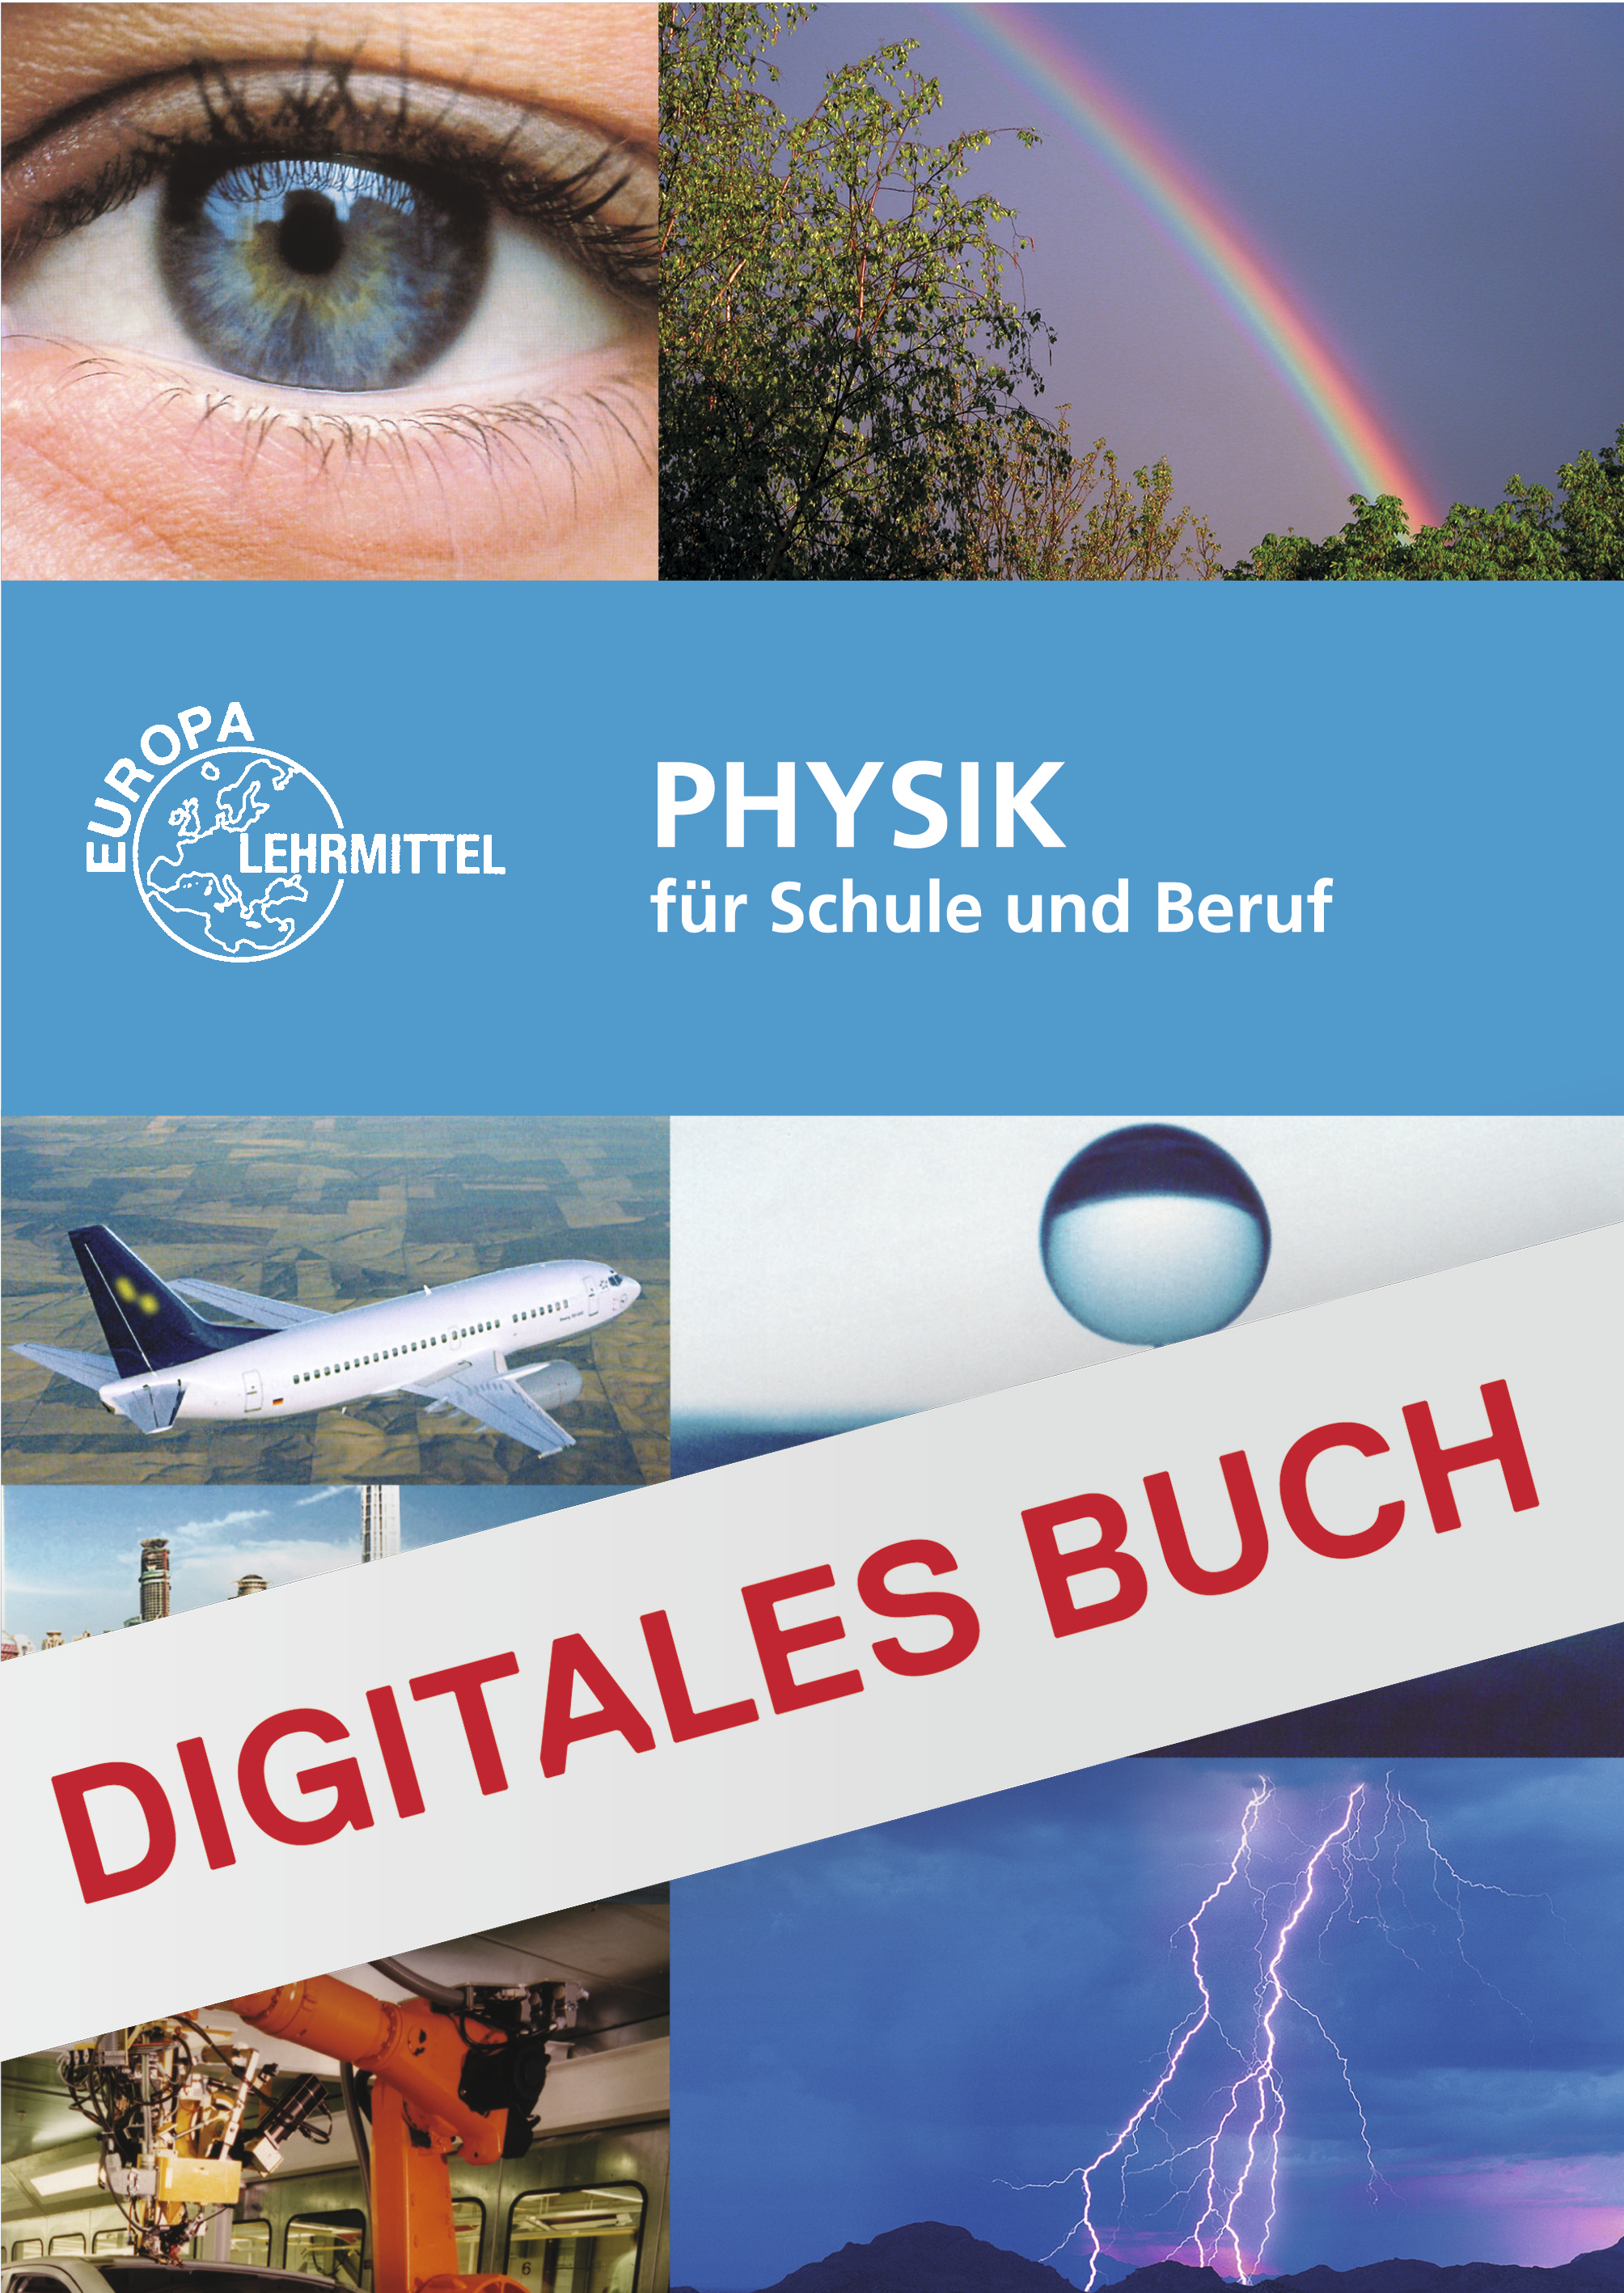 Physik für Schule und Beruf - Digitales Buch